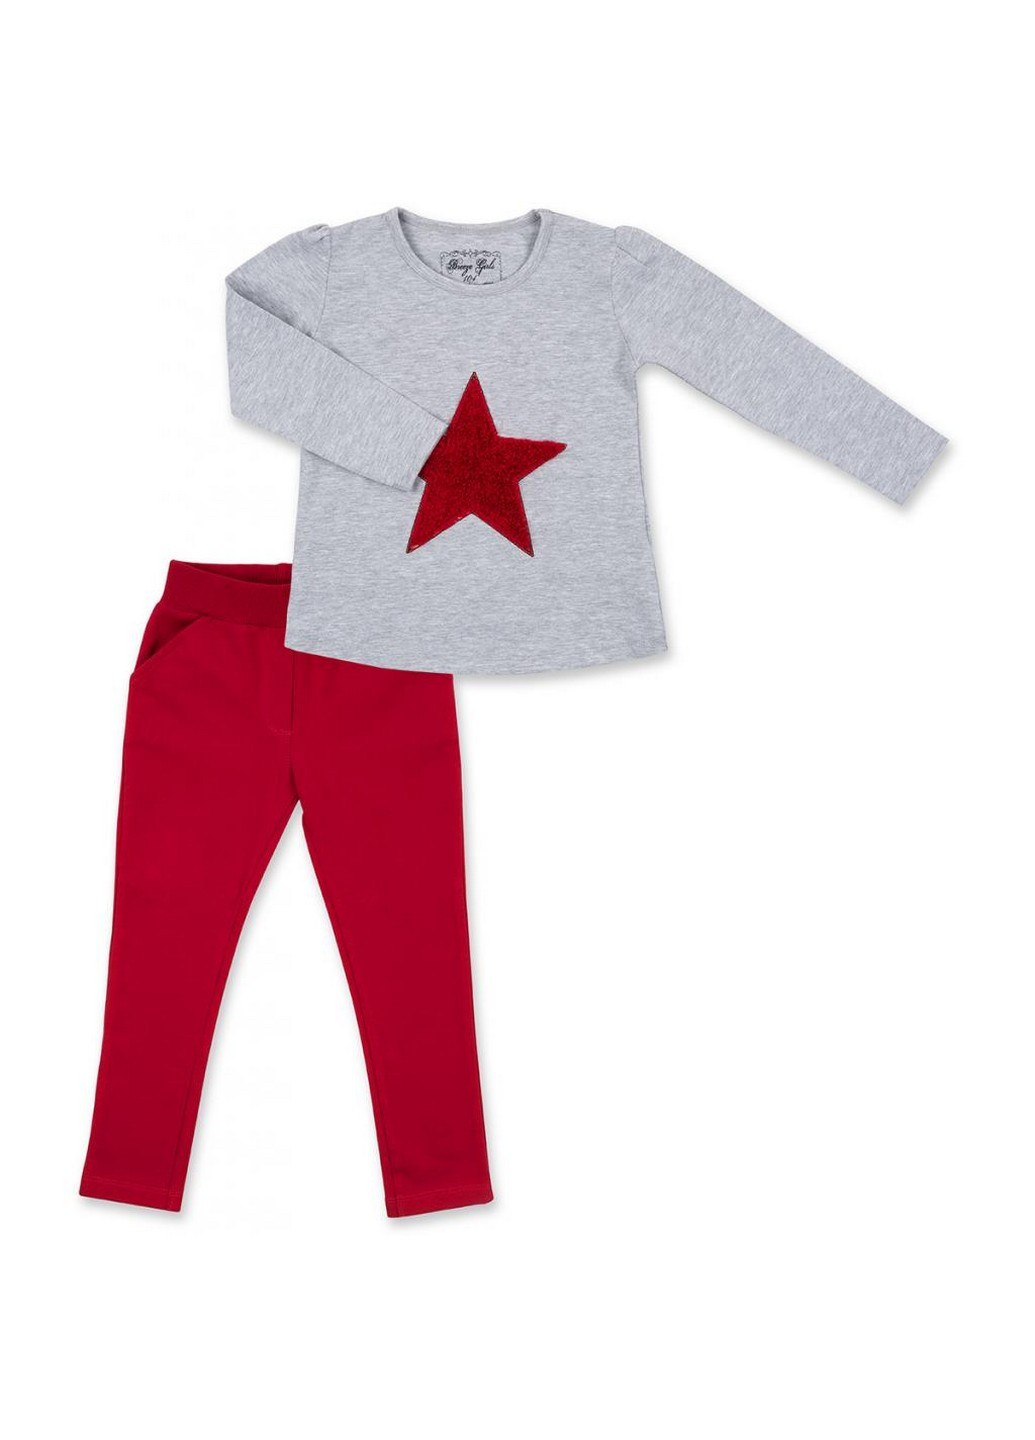 Красный демисезонный костюм десткий с объемной аппликацией (8401-104g-gray) Breeze